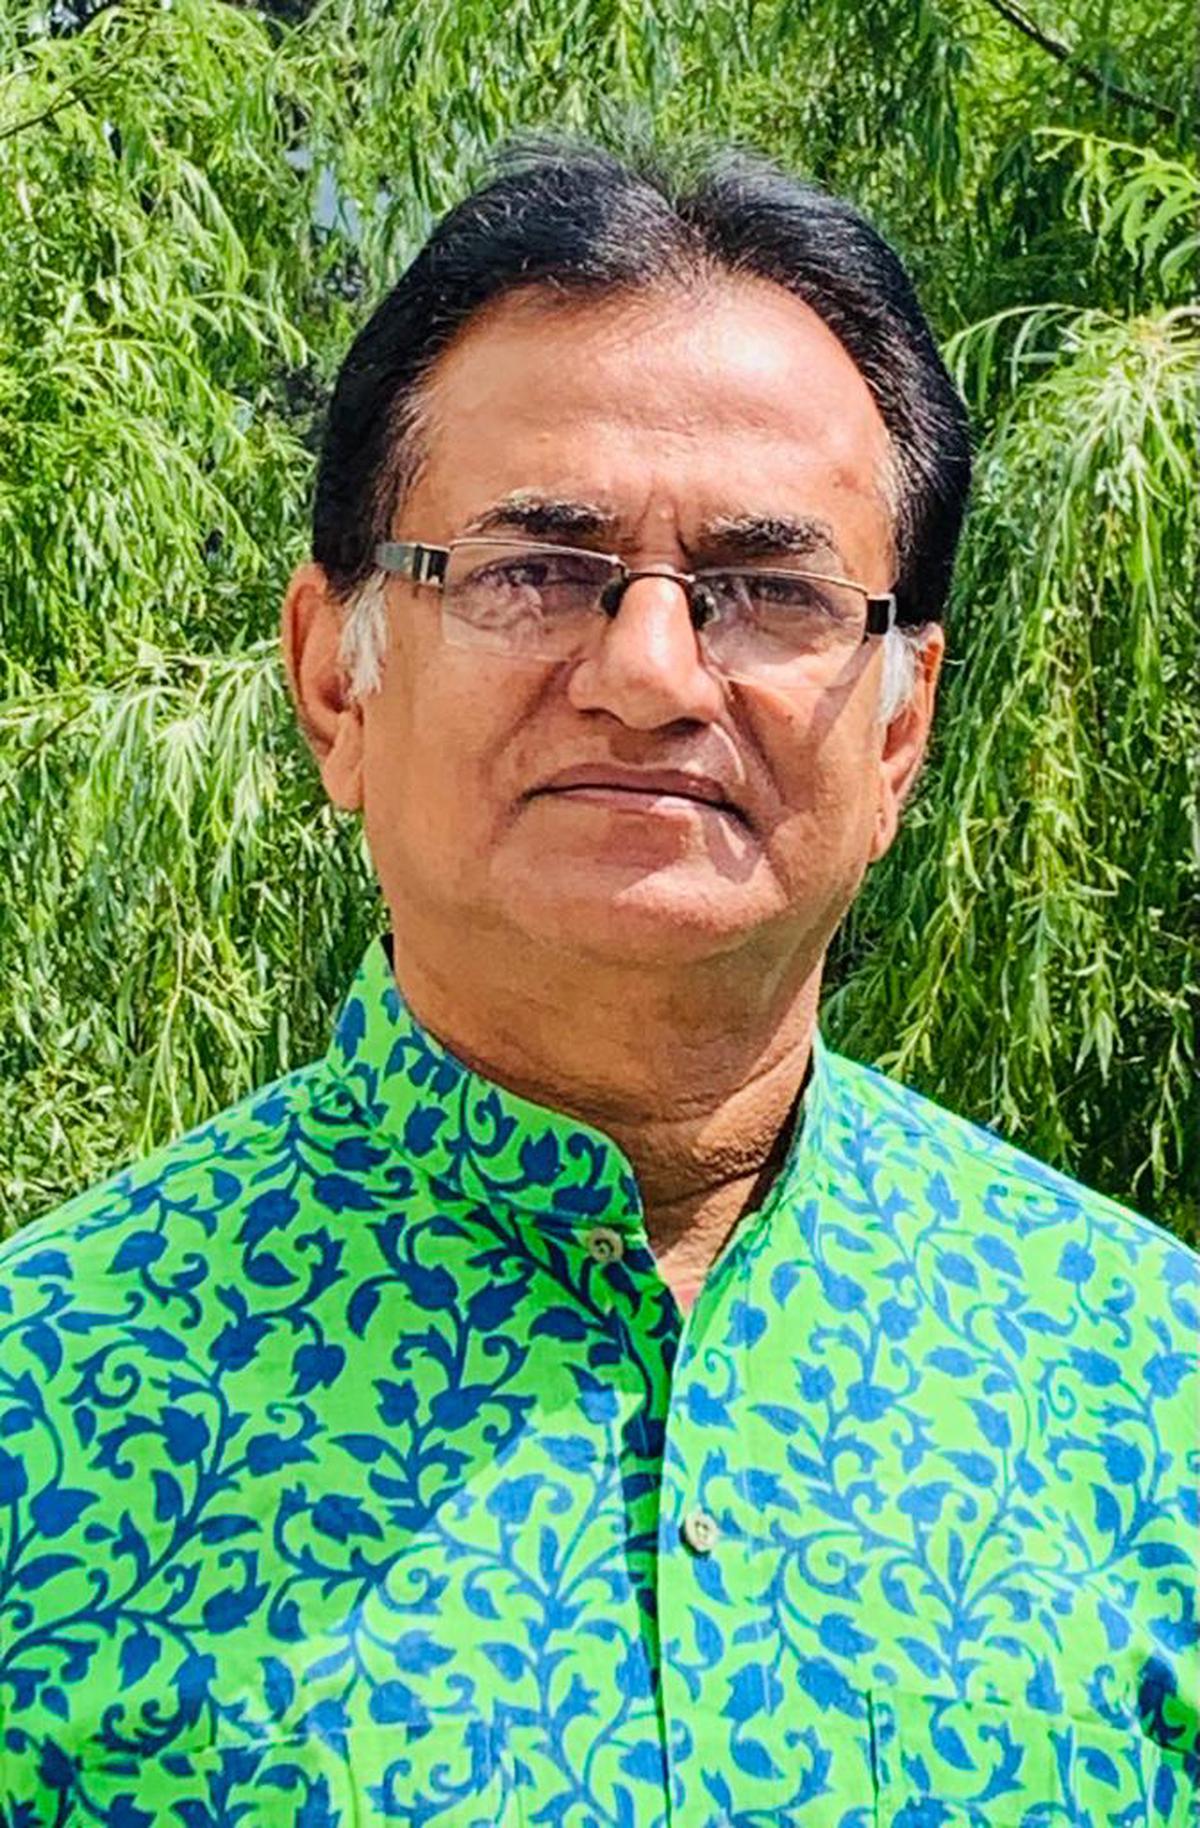 Shyamal Mukherjee